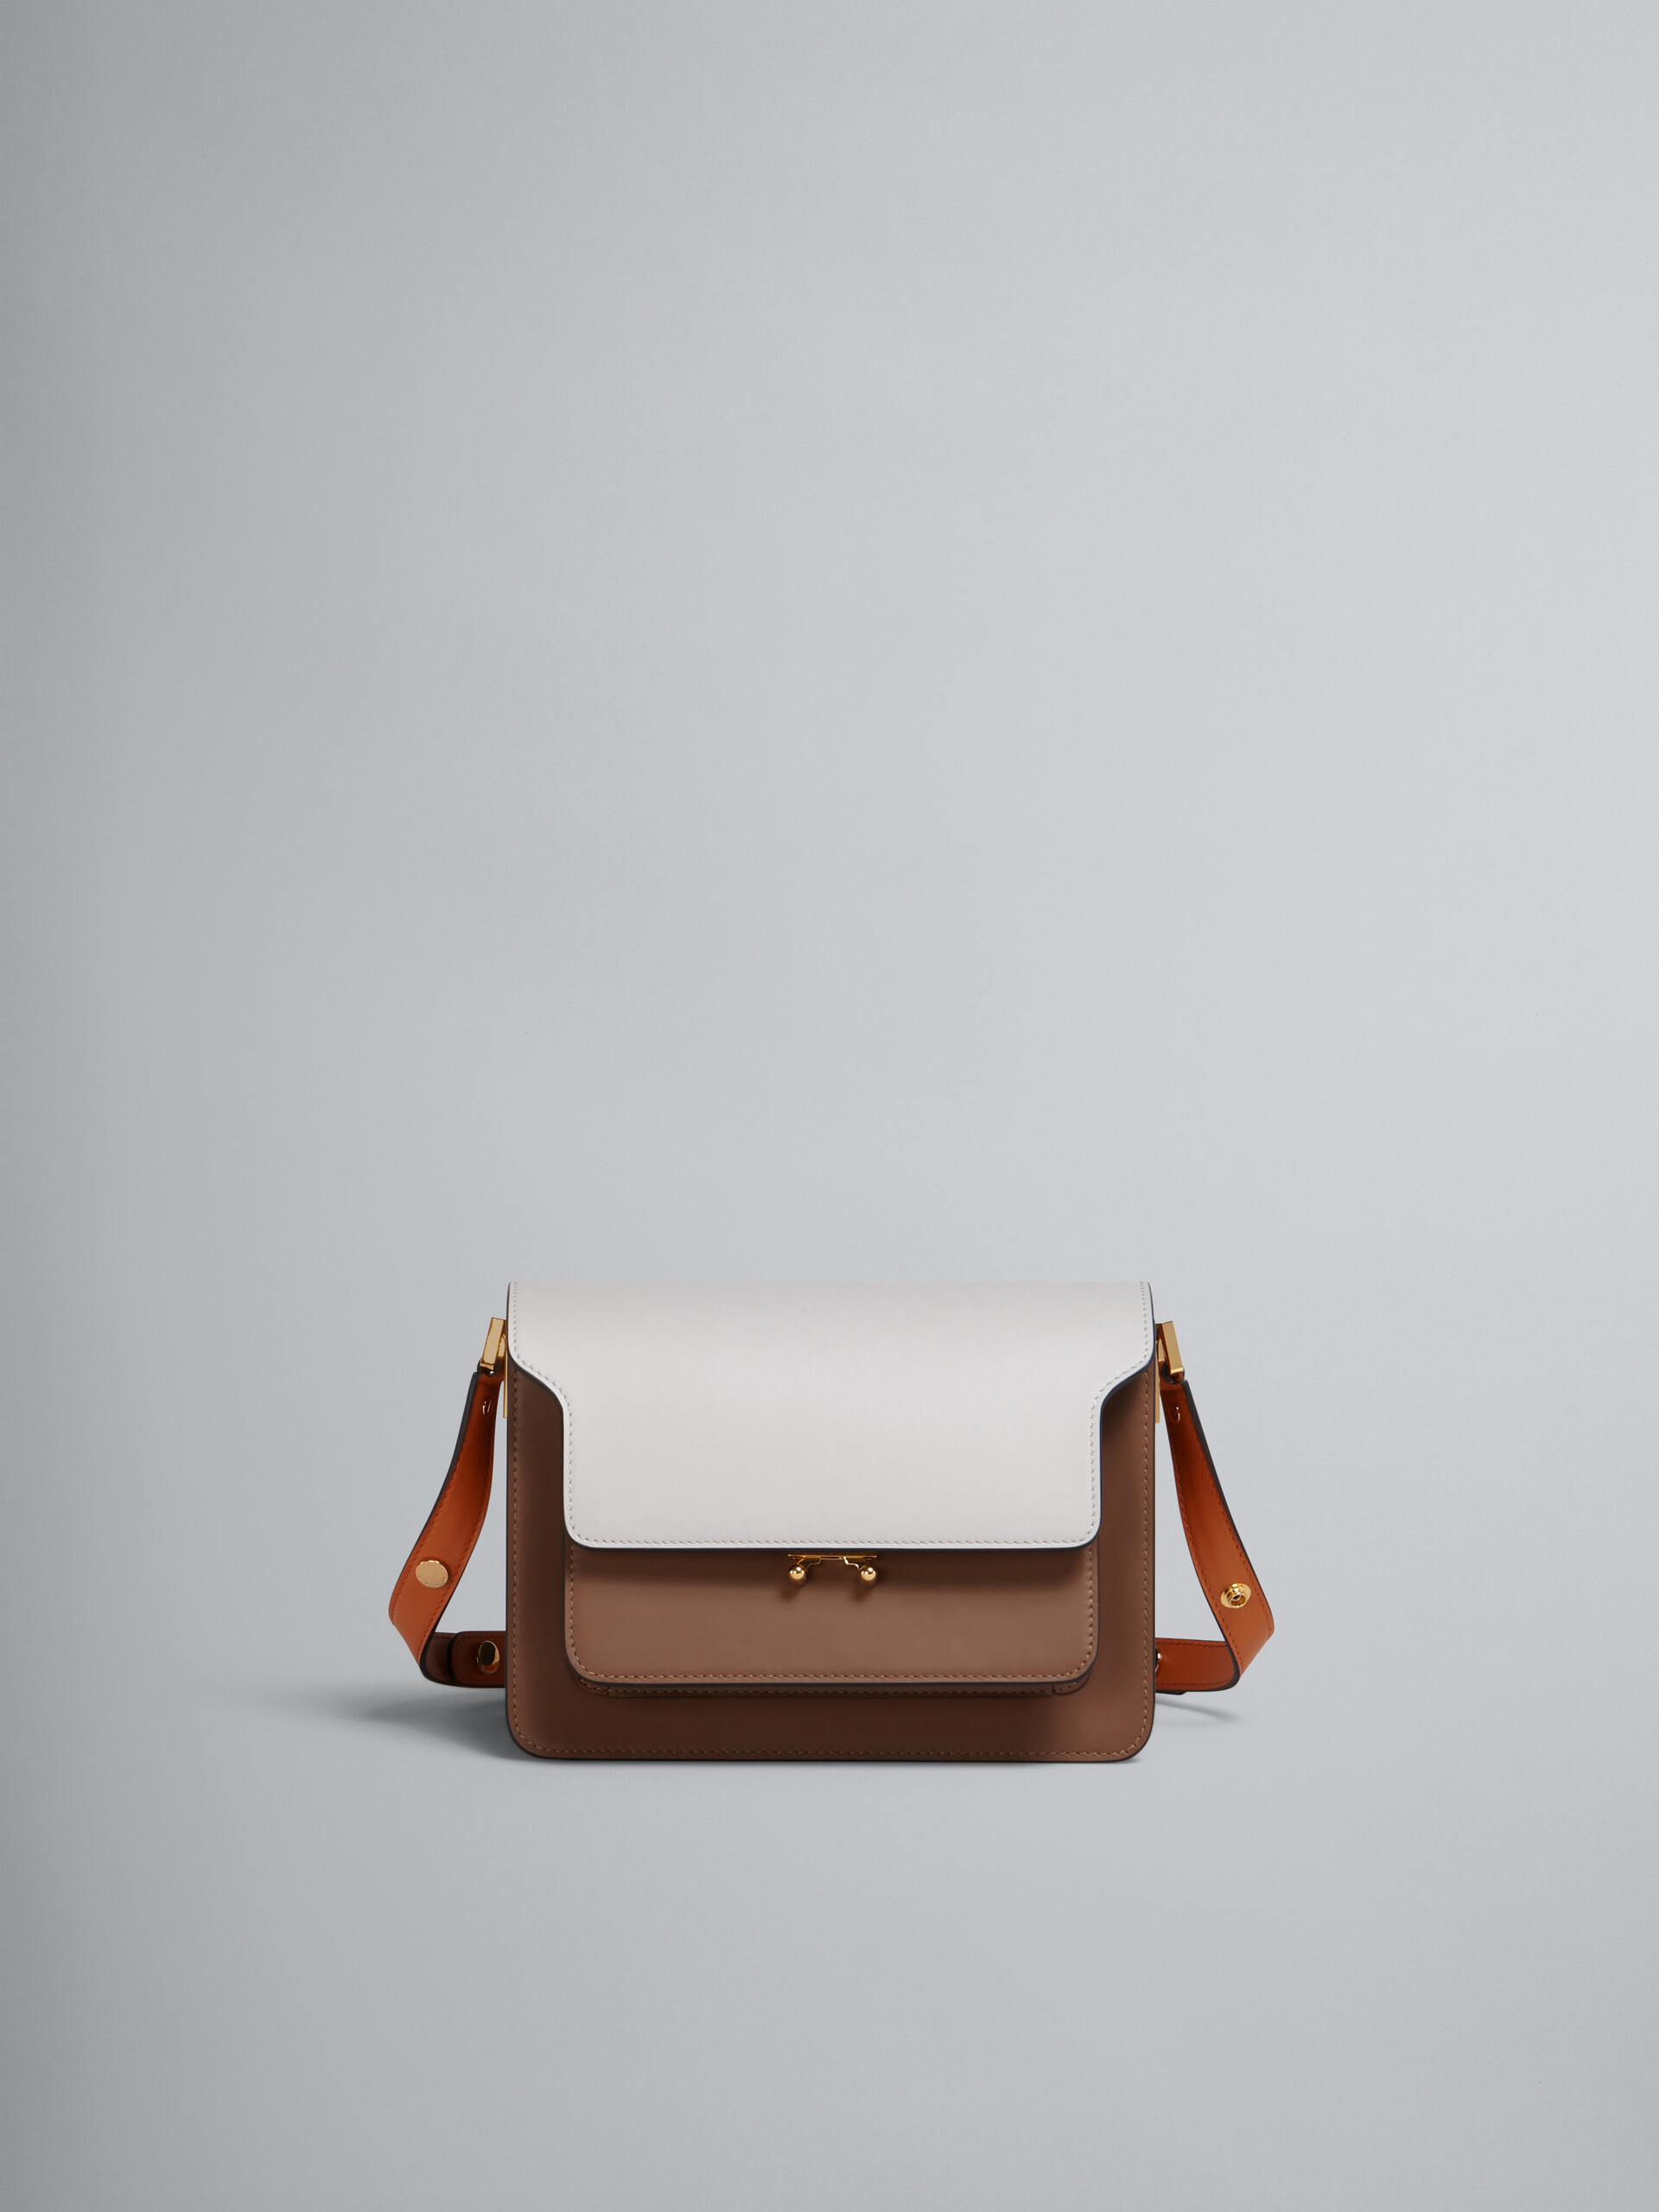 TRUNK Bag aus glattem Kalbsleder in Weiß, Braun und Orange - Schultertaschen - Image 1